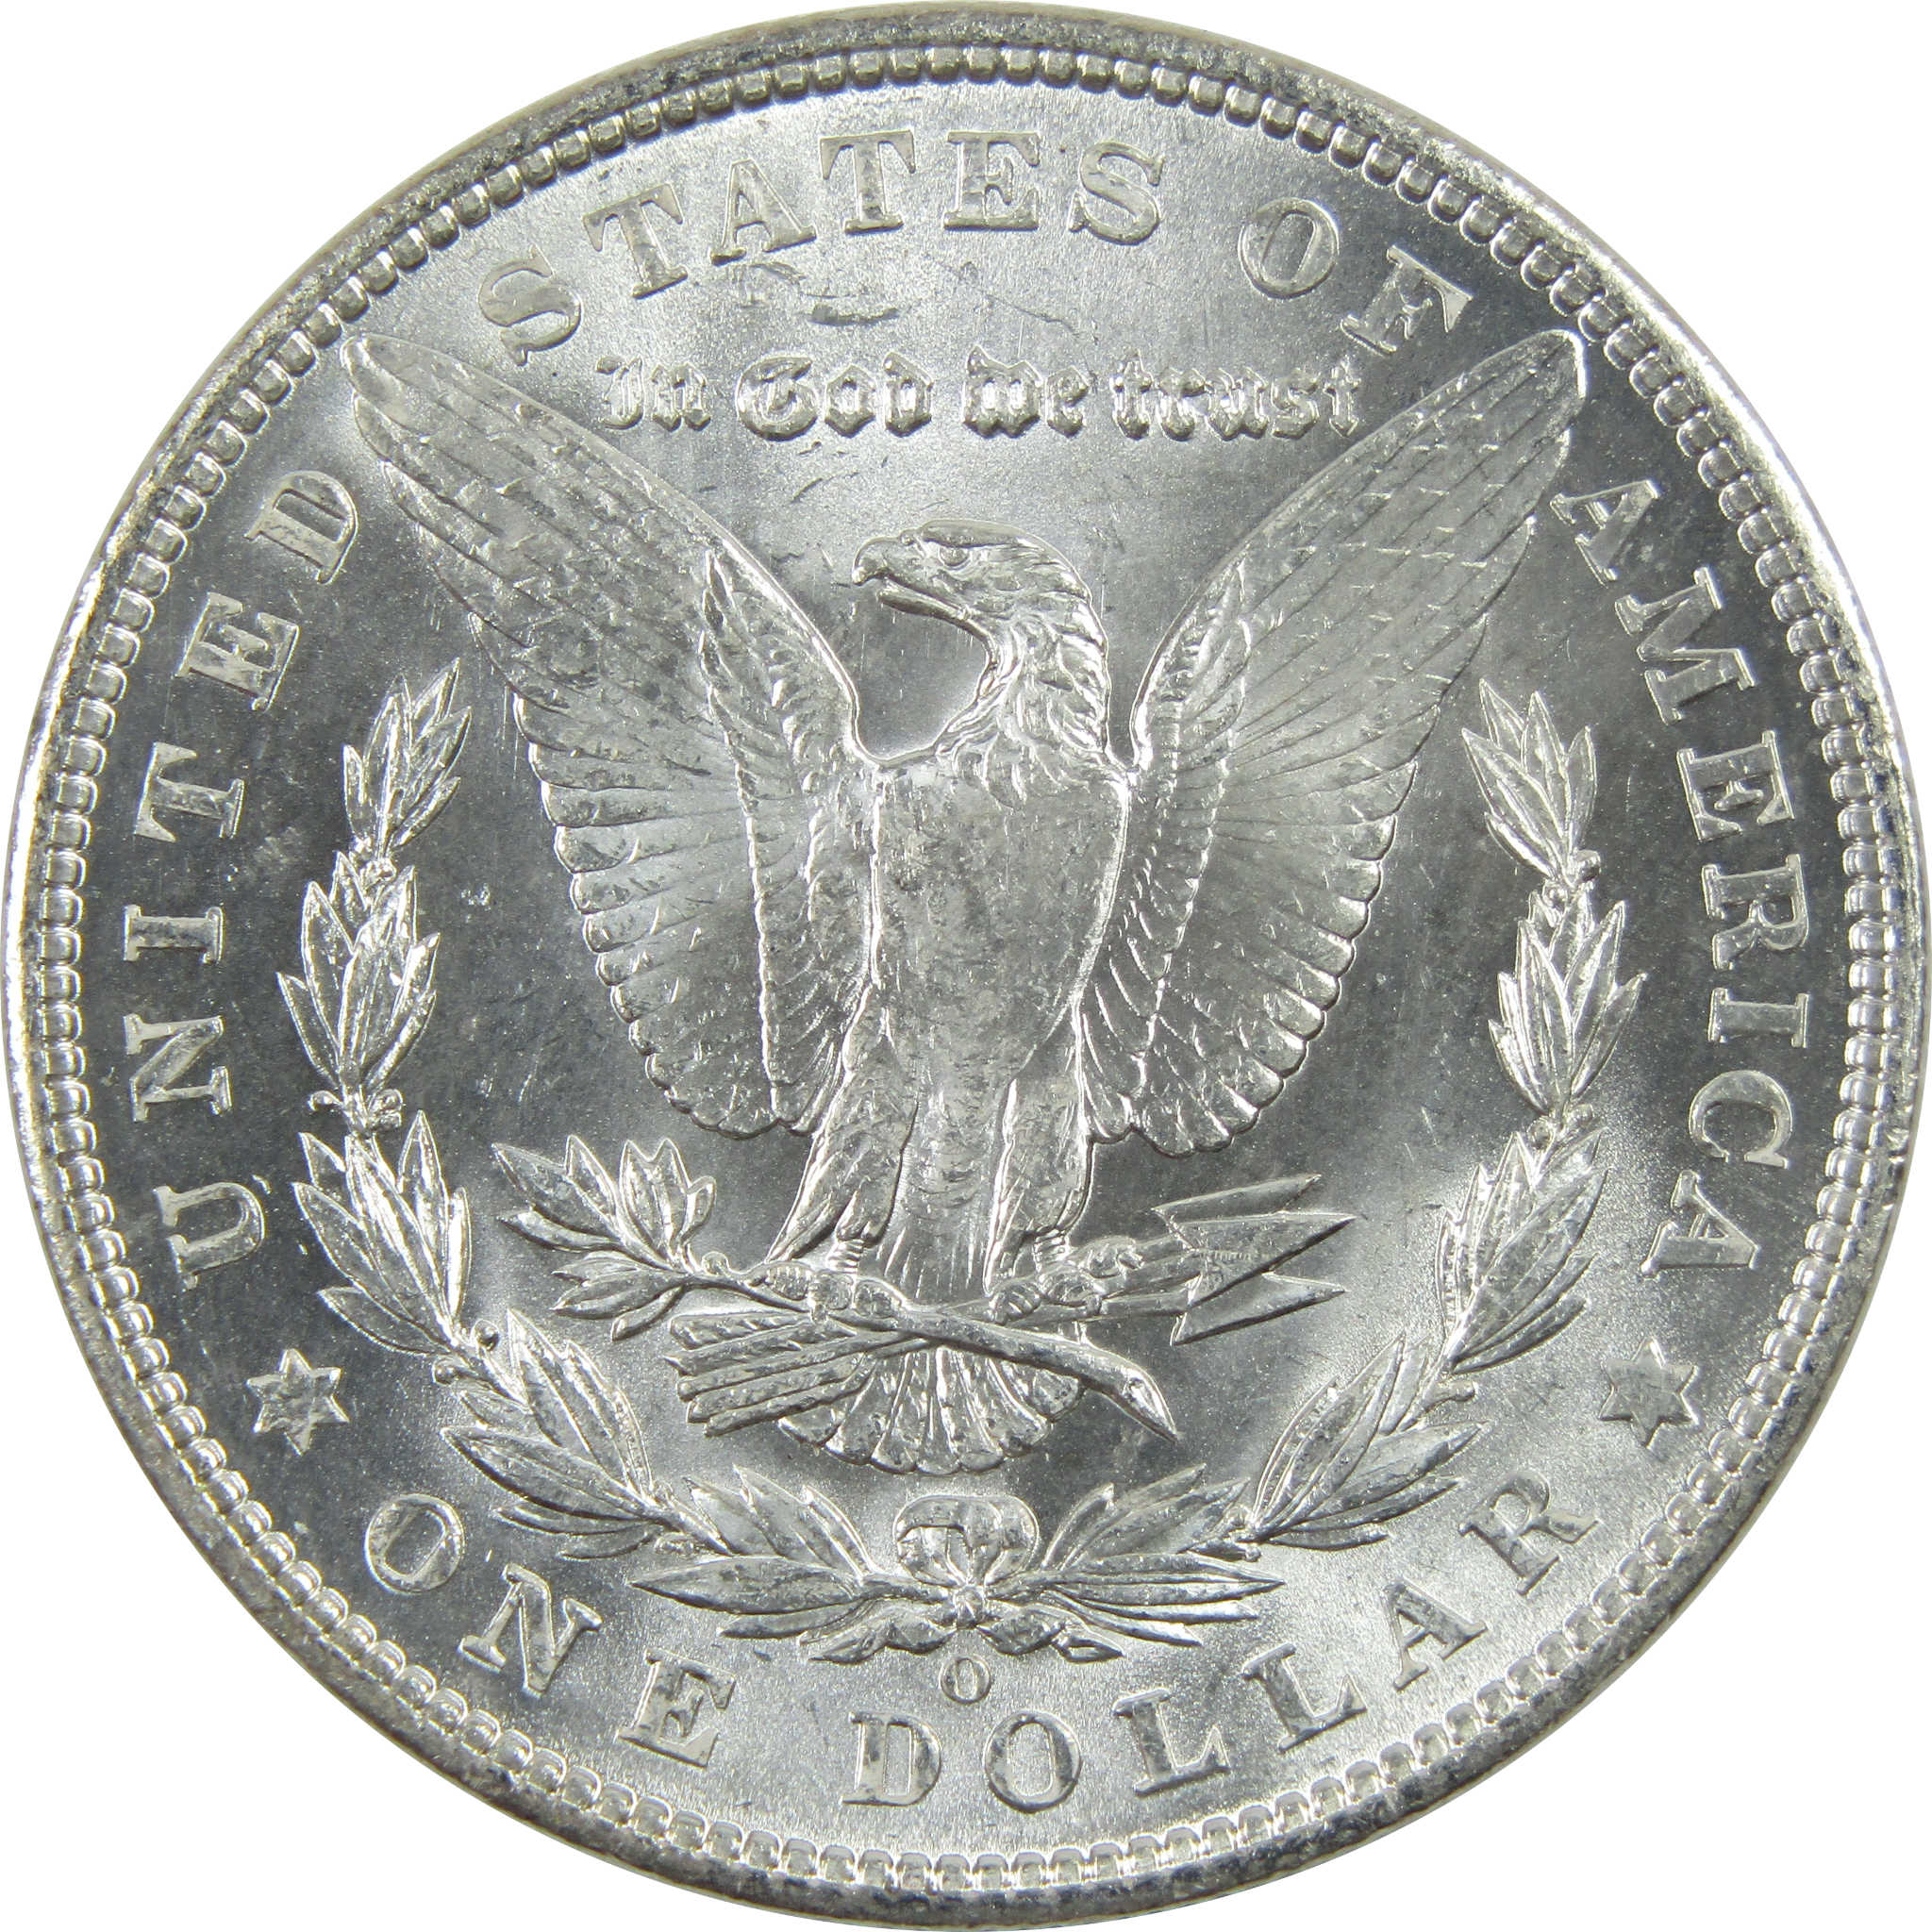 1903 O Morgan Dollar Uncirculated Silver $1 Coin SKU:I11738 - Morgan coin - Morgan silver dollar - Morgan silver dollar for sale - Profile Coins &amp; Collectibles